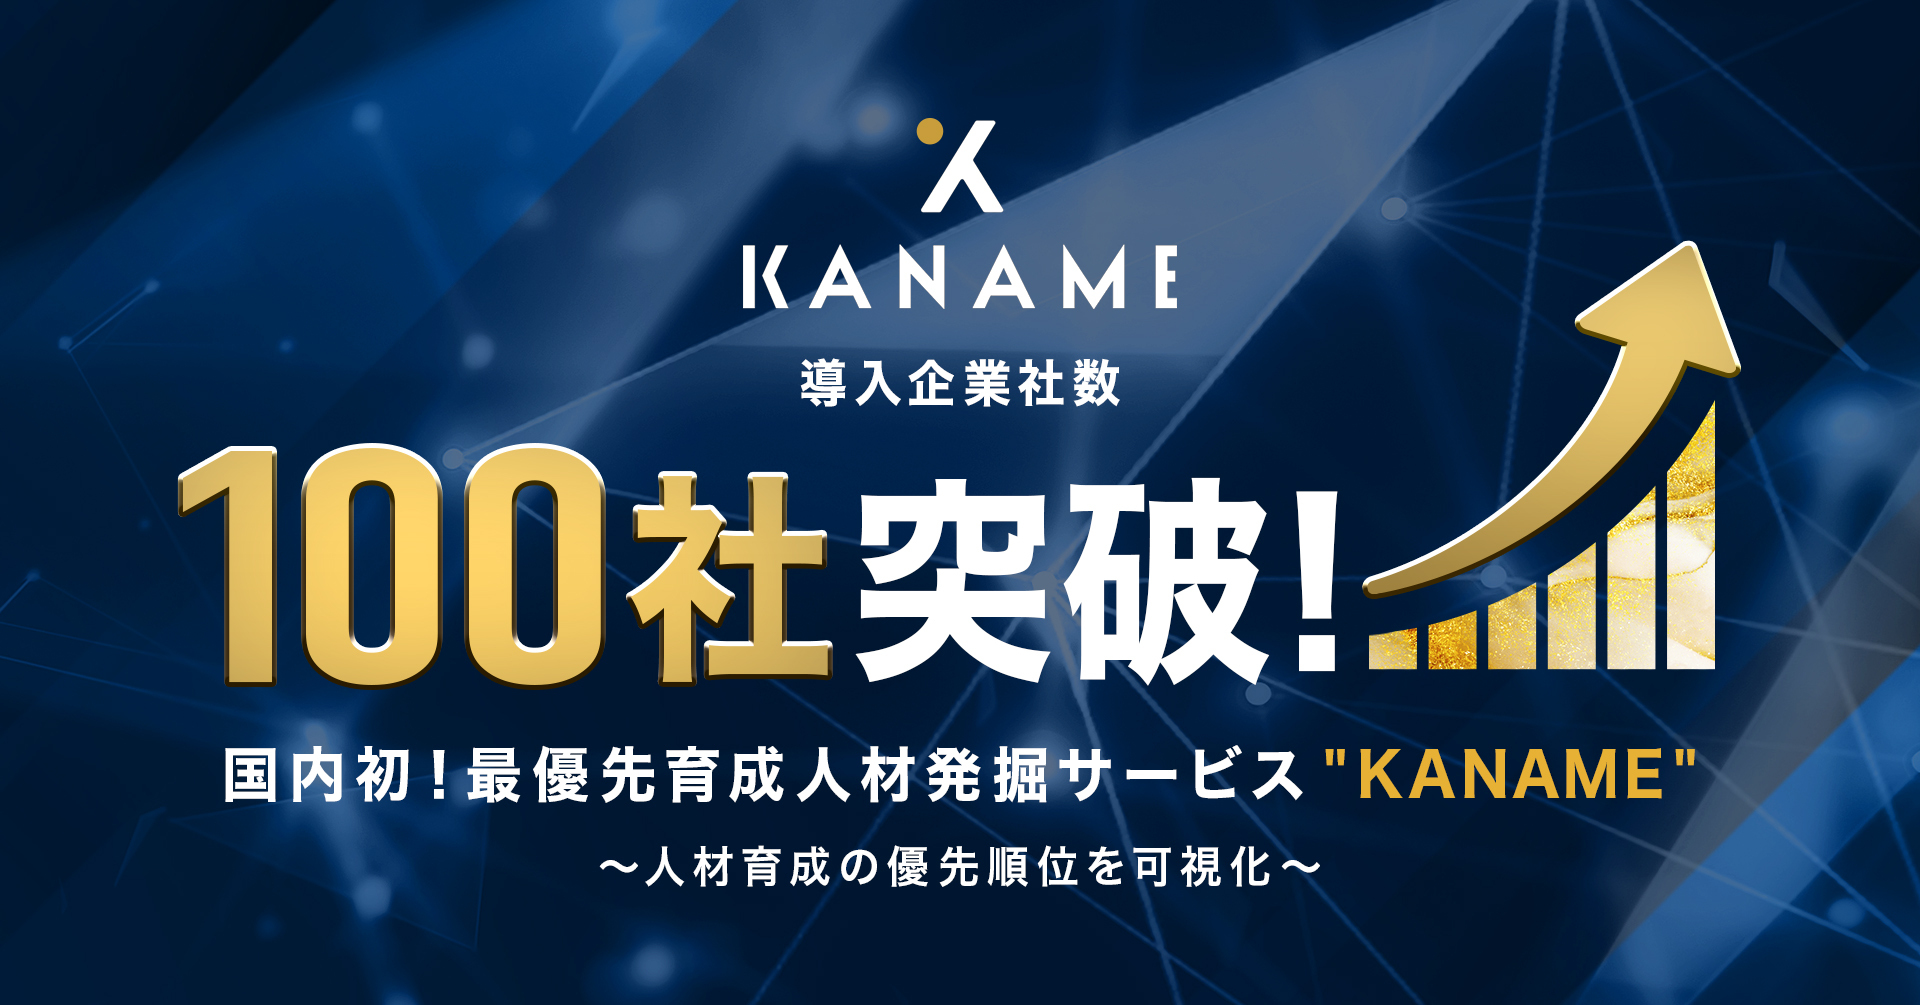 人材育成の優先順位を可視化する人材発掘サービス Kaname サービス開始から約2ヶ月で導入企業社数100社を突破 株式会社itsudatsuのプレスリリース